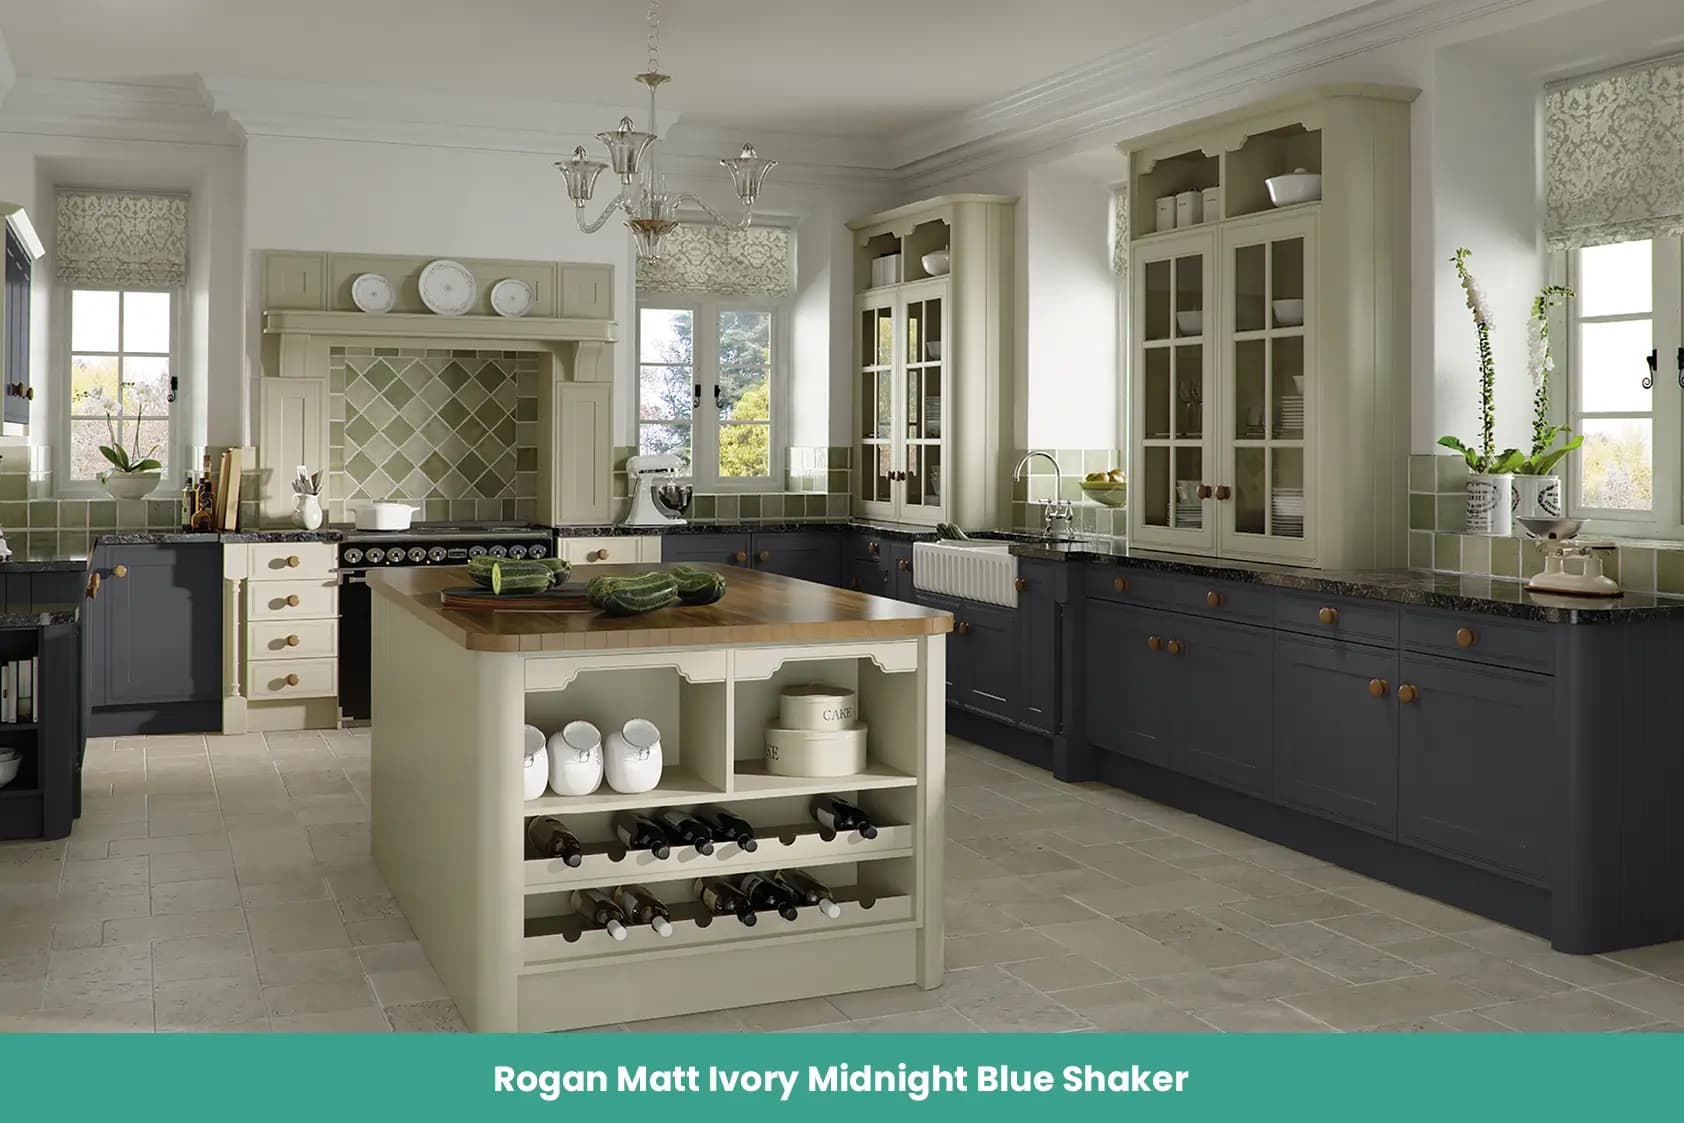 Rogan Matt Ivory Midnight Blue Shaker Kitchen